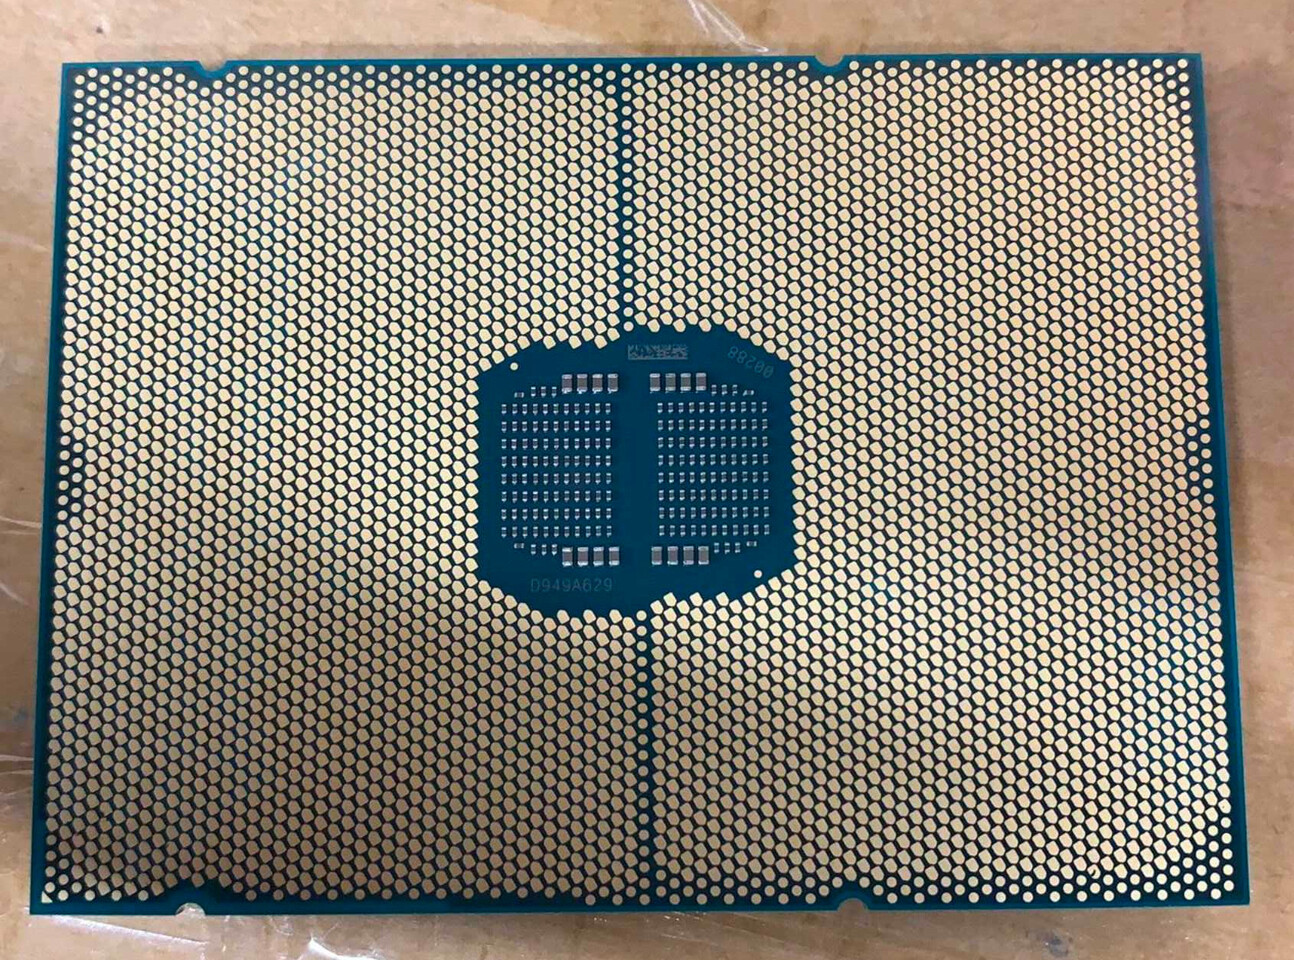 Immagine pubblicata in relazione al seguente contenuto: Foto della CPU Intel Xeon Sapphire Rapids a doppio die - DDR5 & PCIe 5.0 Ready | Nome immagine: news31444_Intel_Xeon-Sapphire-Rapids_1.jpg